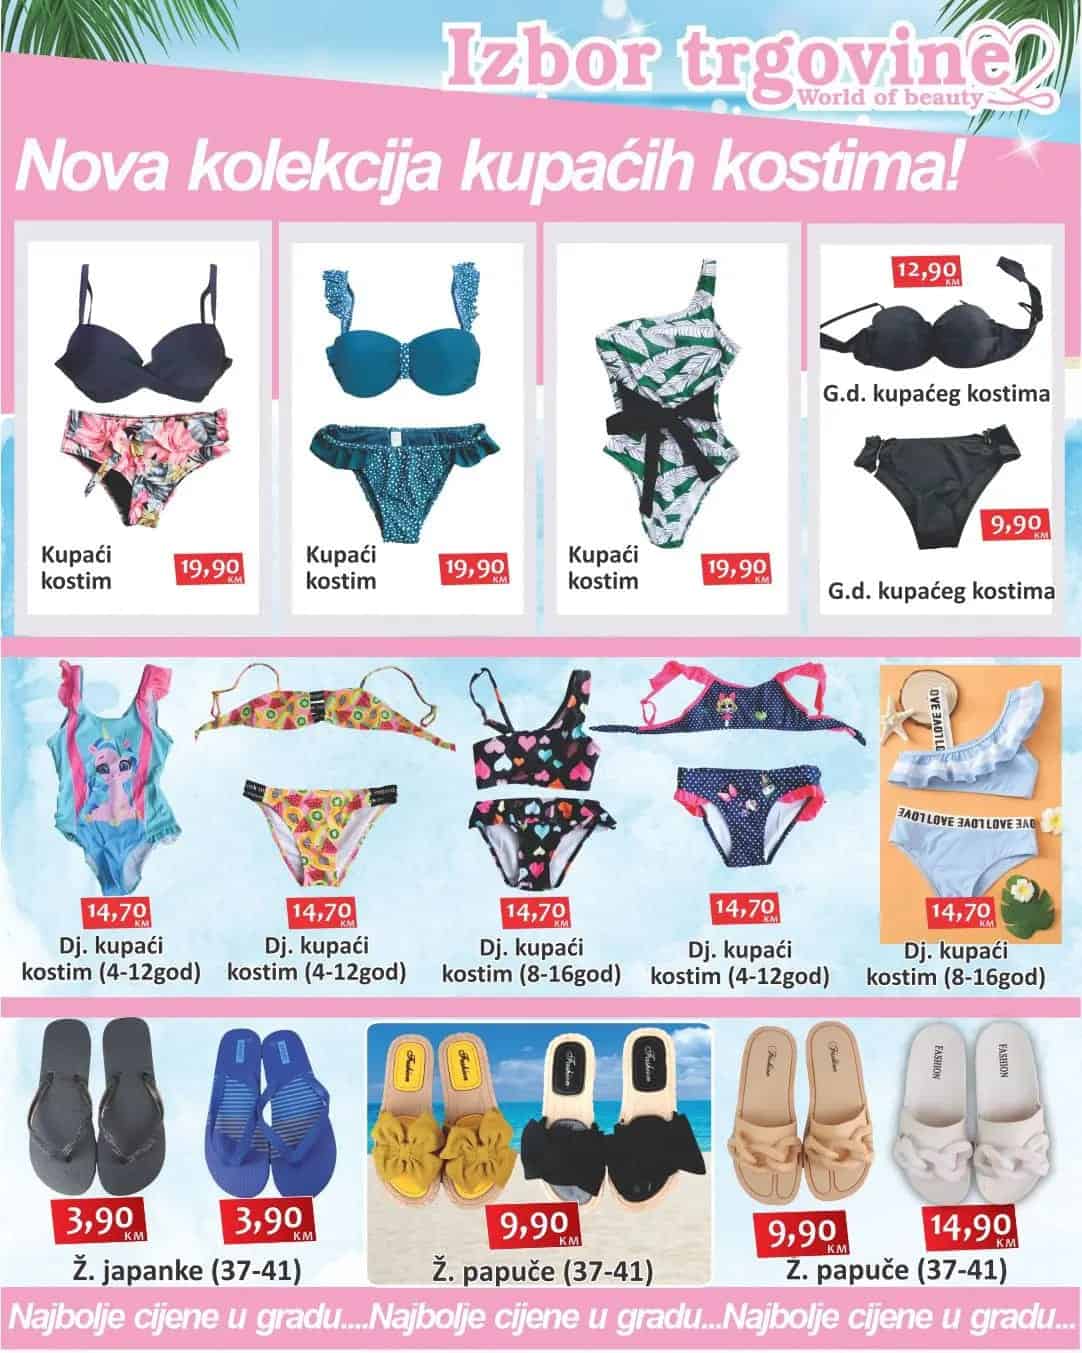 Izbor trgovine katalog JULI/AVGUST 2022 ➤ Super cijene kupaći kostimi 👙, papuče! Sve za LJETO🏝!